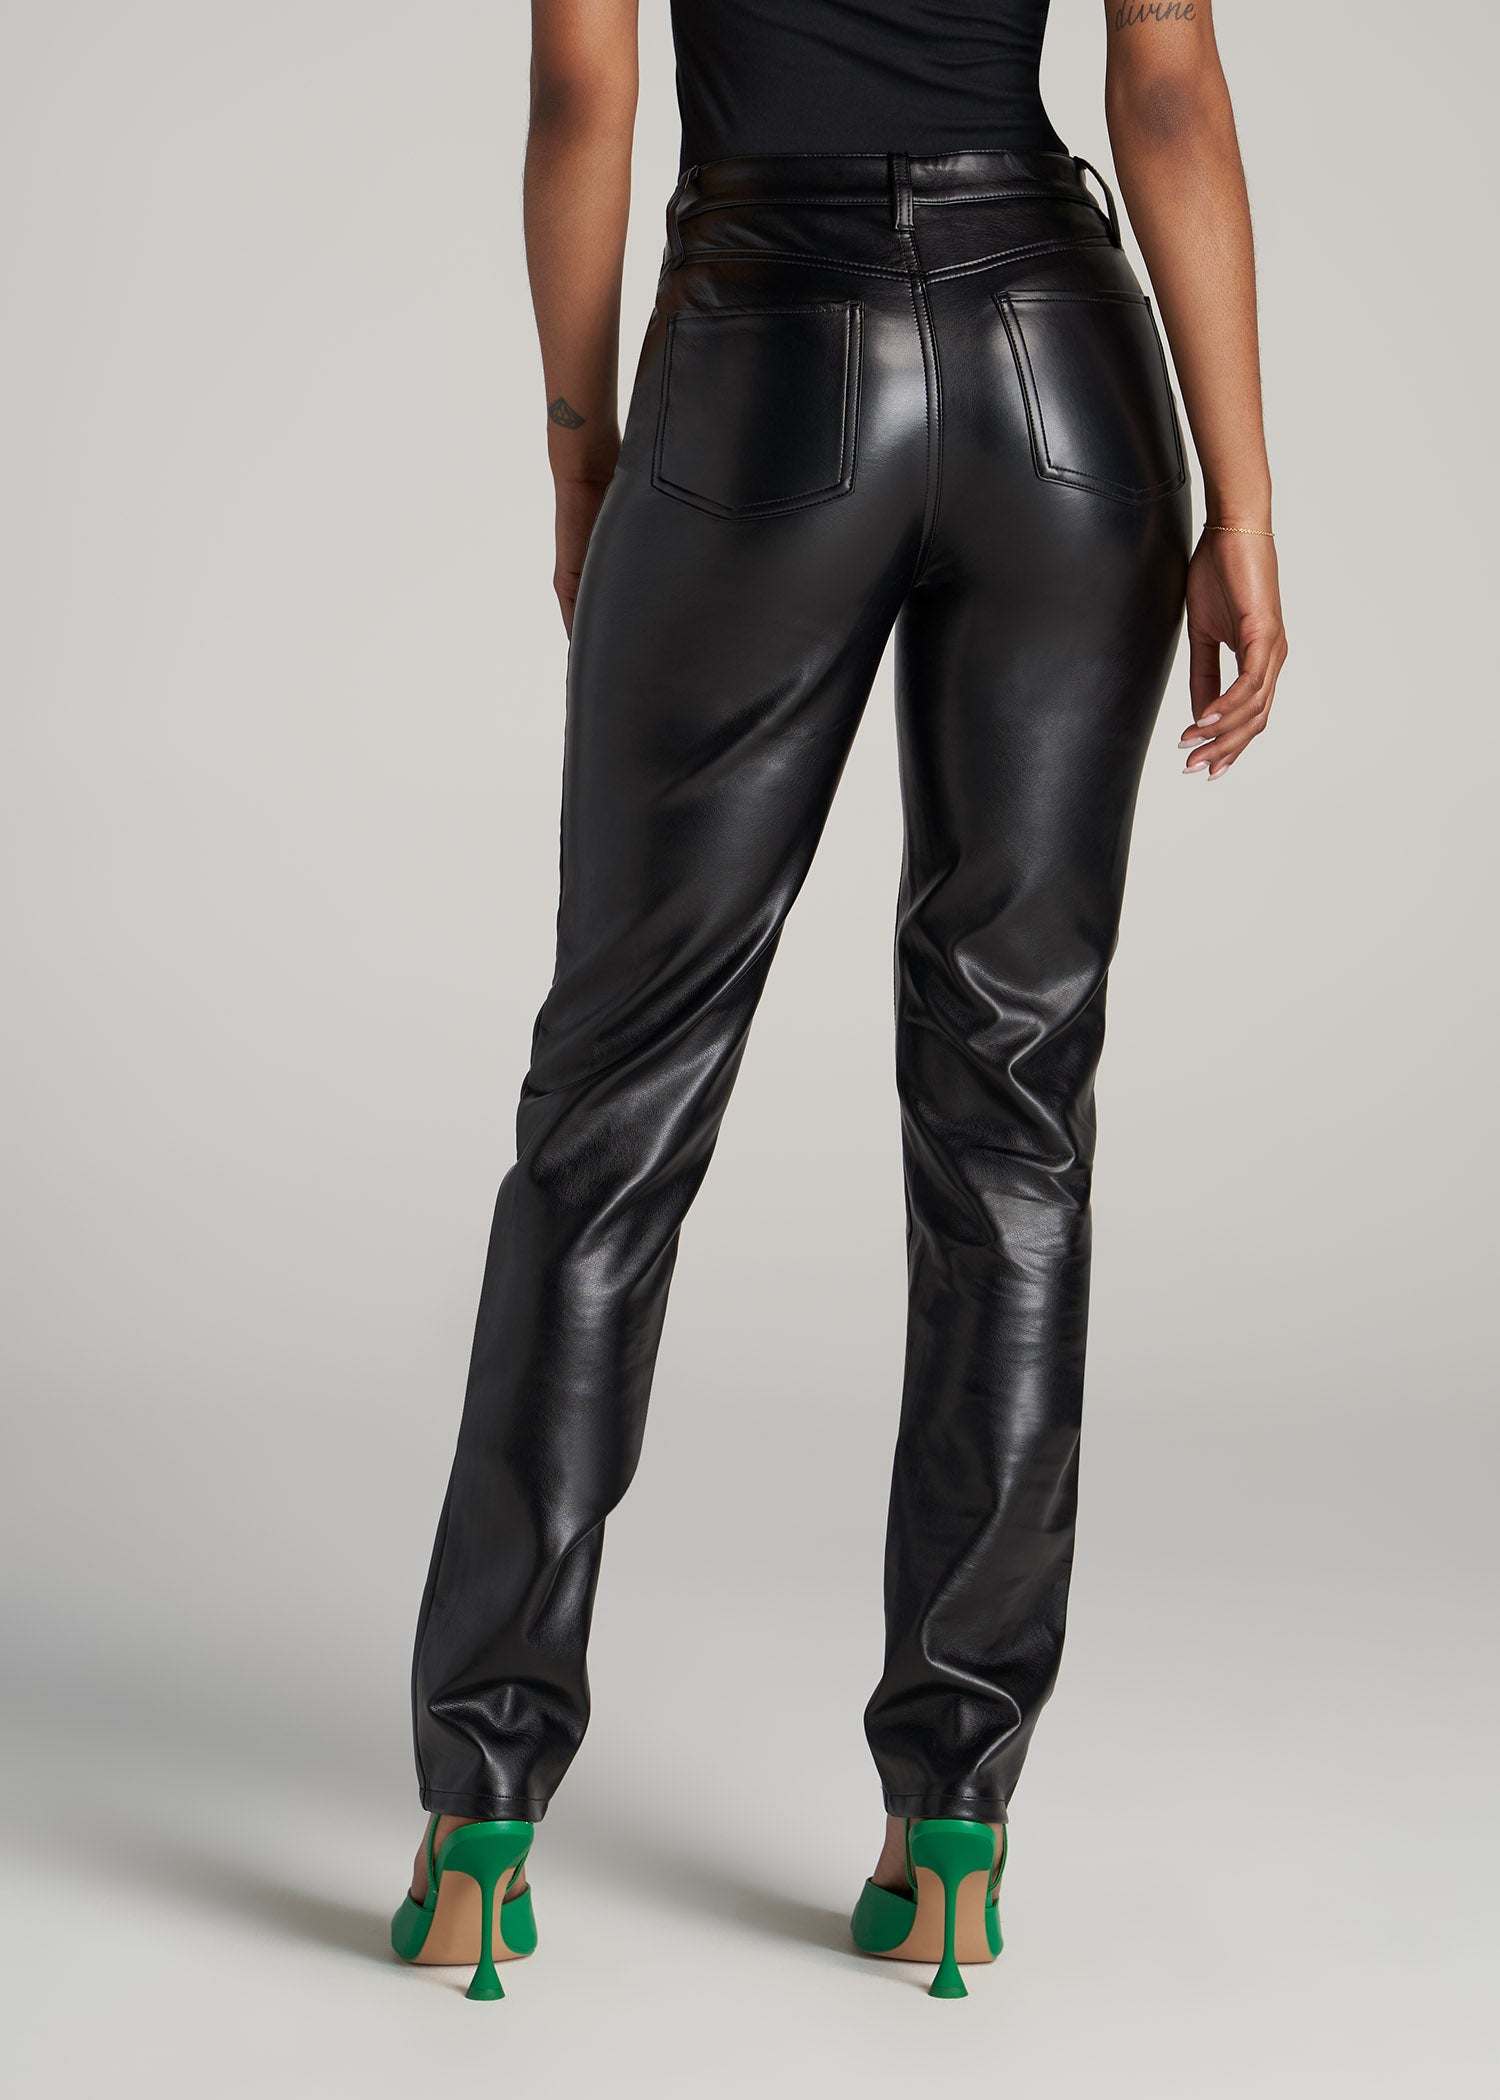 Belted black imitation leather pants - Cinelle Paris, fashionable women